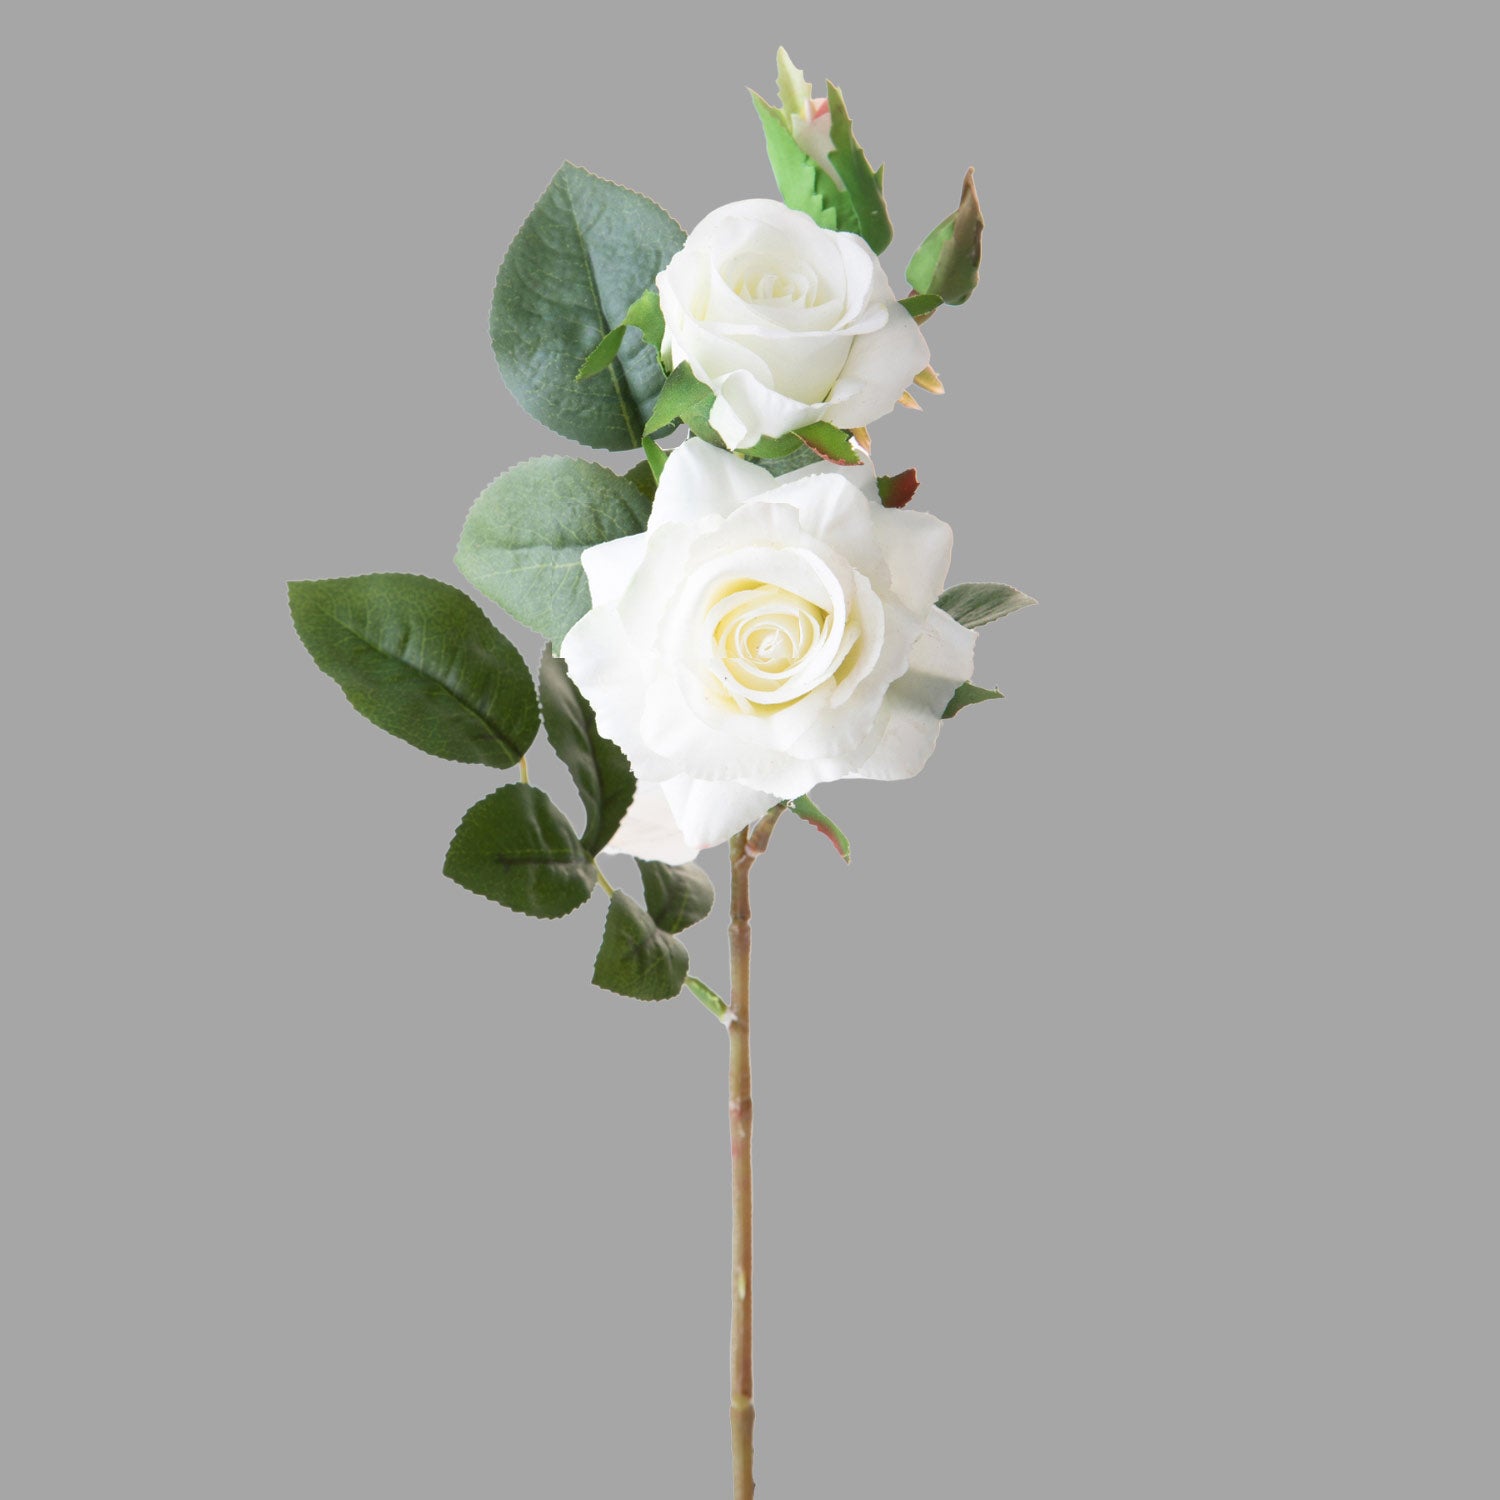 Rózsa művirág, fehér színárnyalatú nyílt és bimbós virágfejekkel.